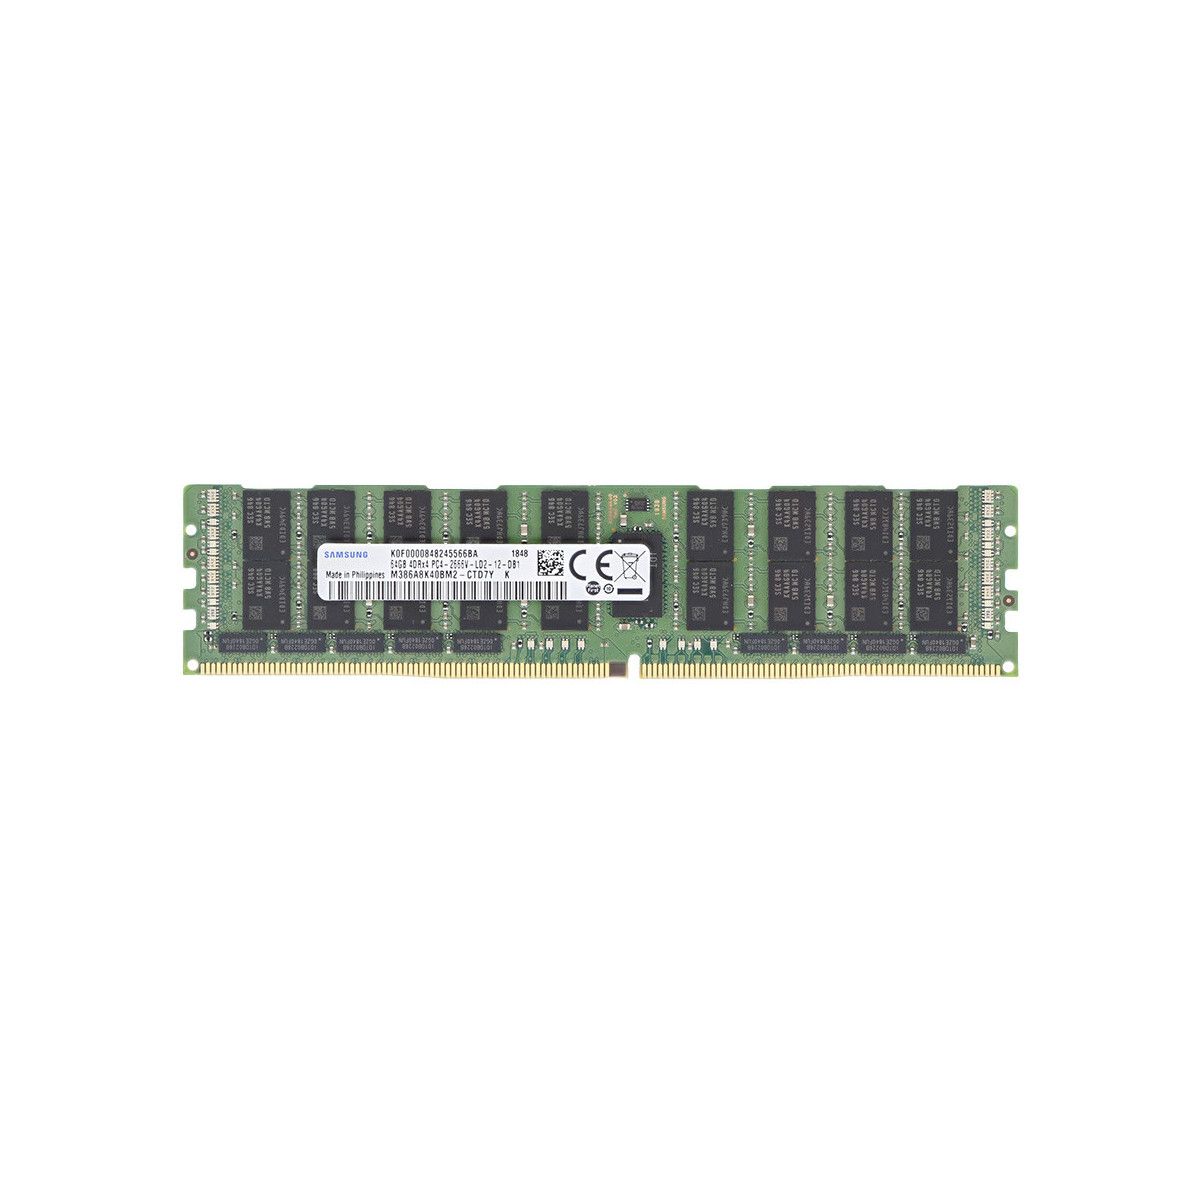 A8711890-MS - Memstar 1x 64GB DDR4-2400 LRDIMM PC4-19200T-L - Mem-Star Compatible OEM Memoria 1 - Memstar 